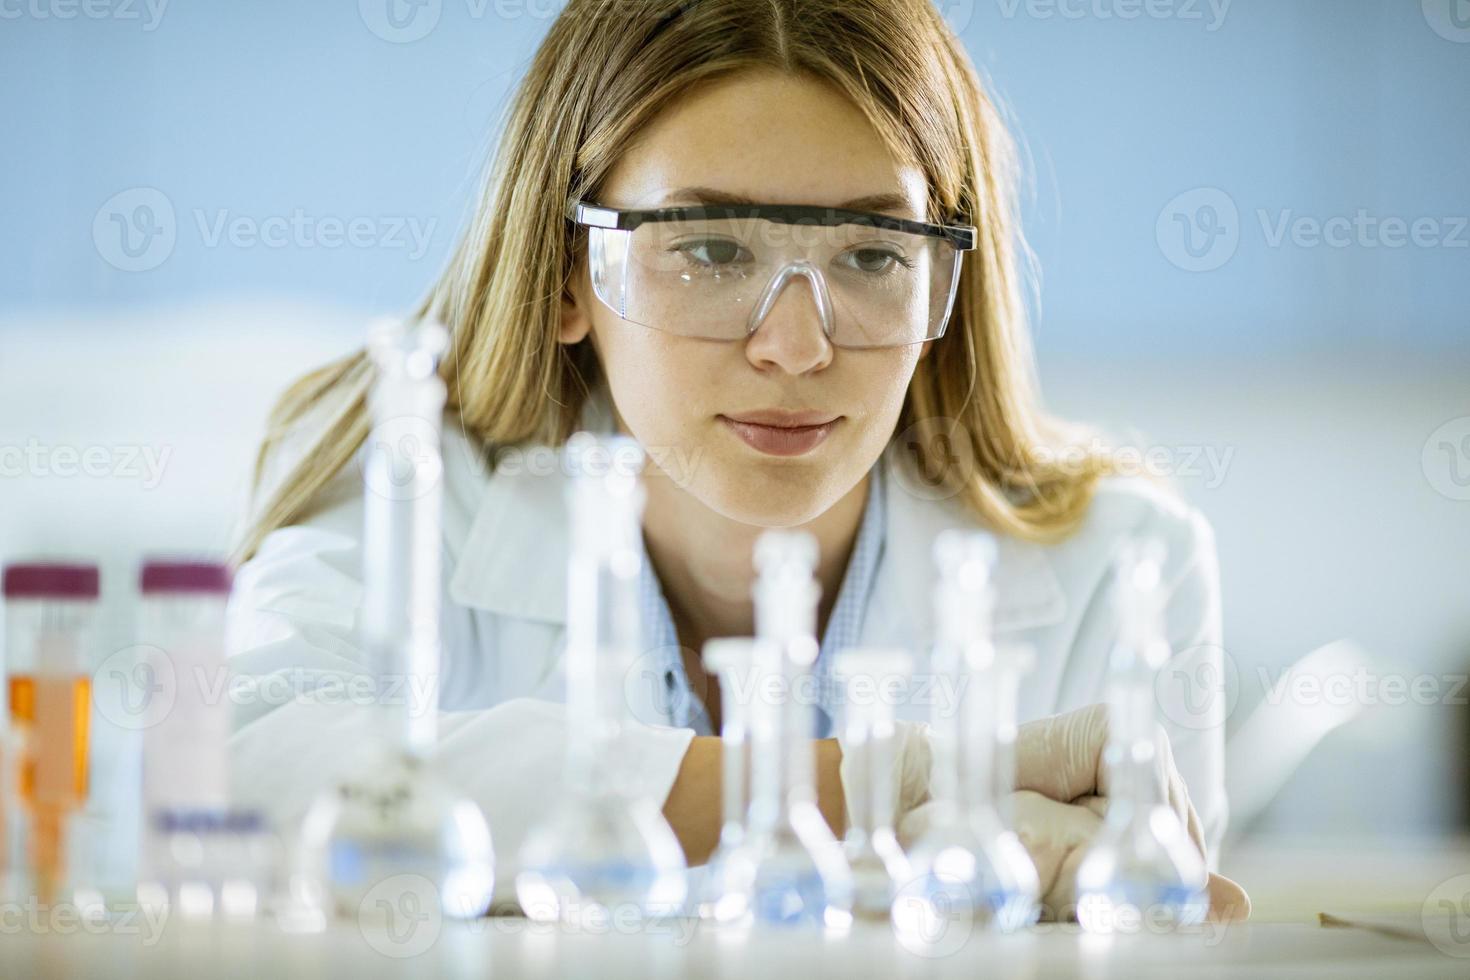 vrouwelijke medisch of wetenschappelijk onderzoeker kijken naar een kolven met oplossingen in een laboratorium foto